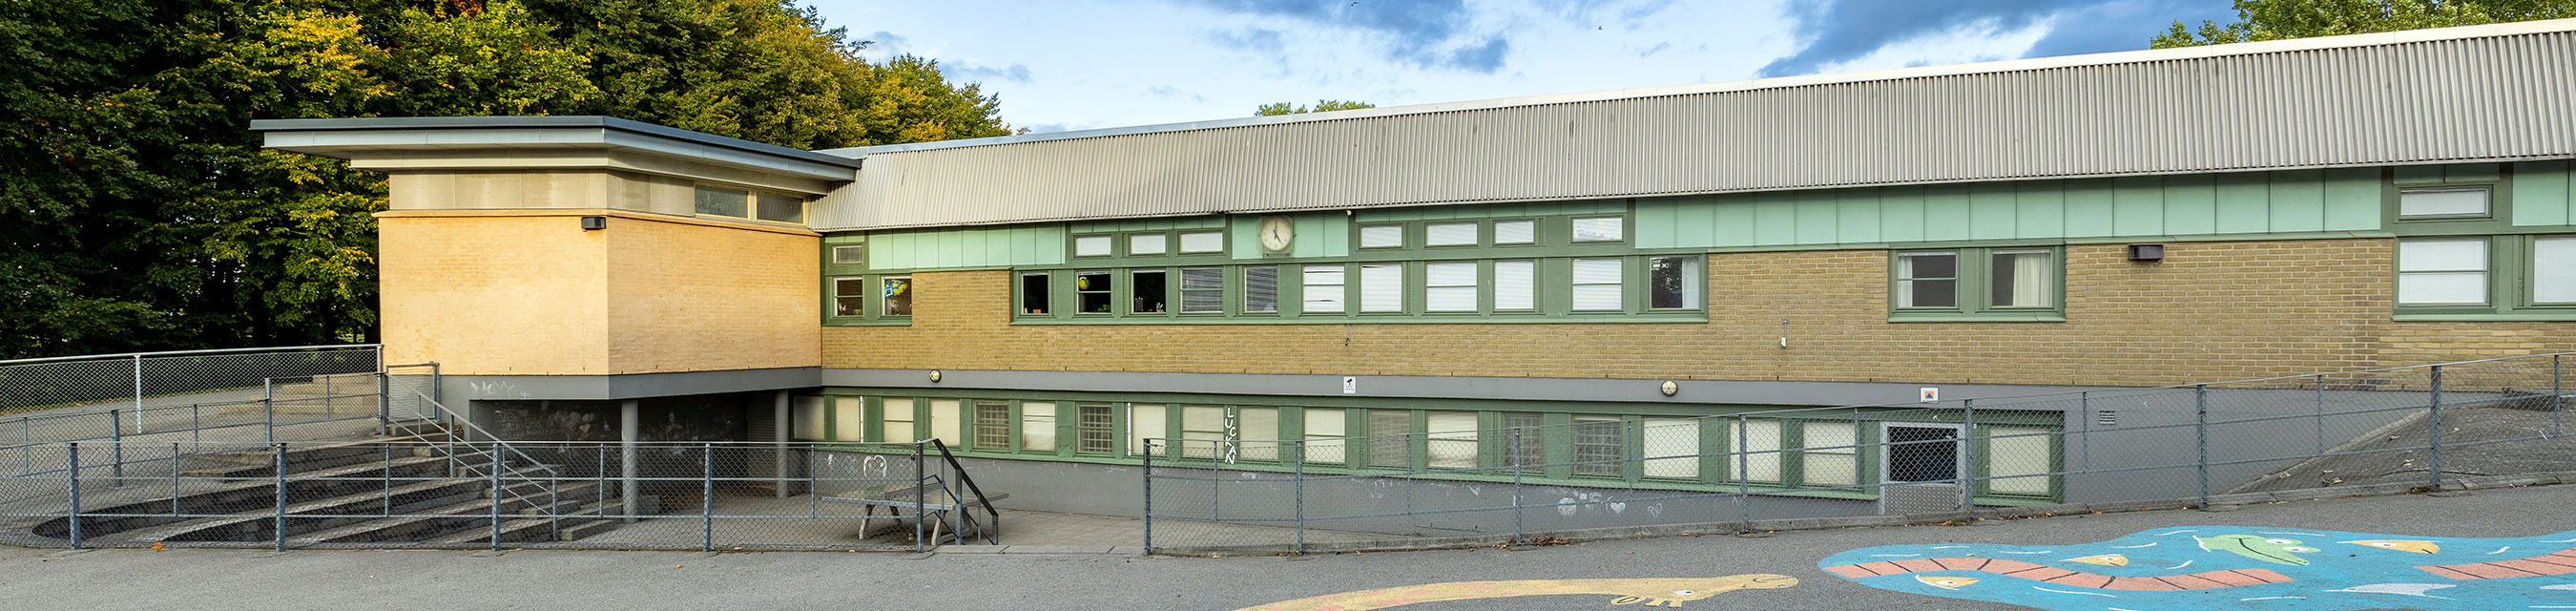 Äppelrosens förskola är byggd i två plan och har fem avdelningar. 